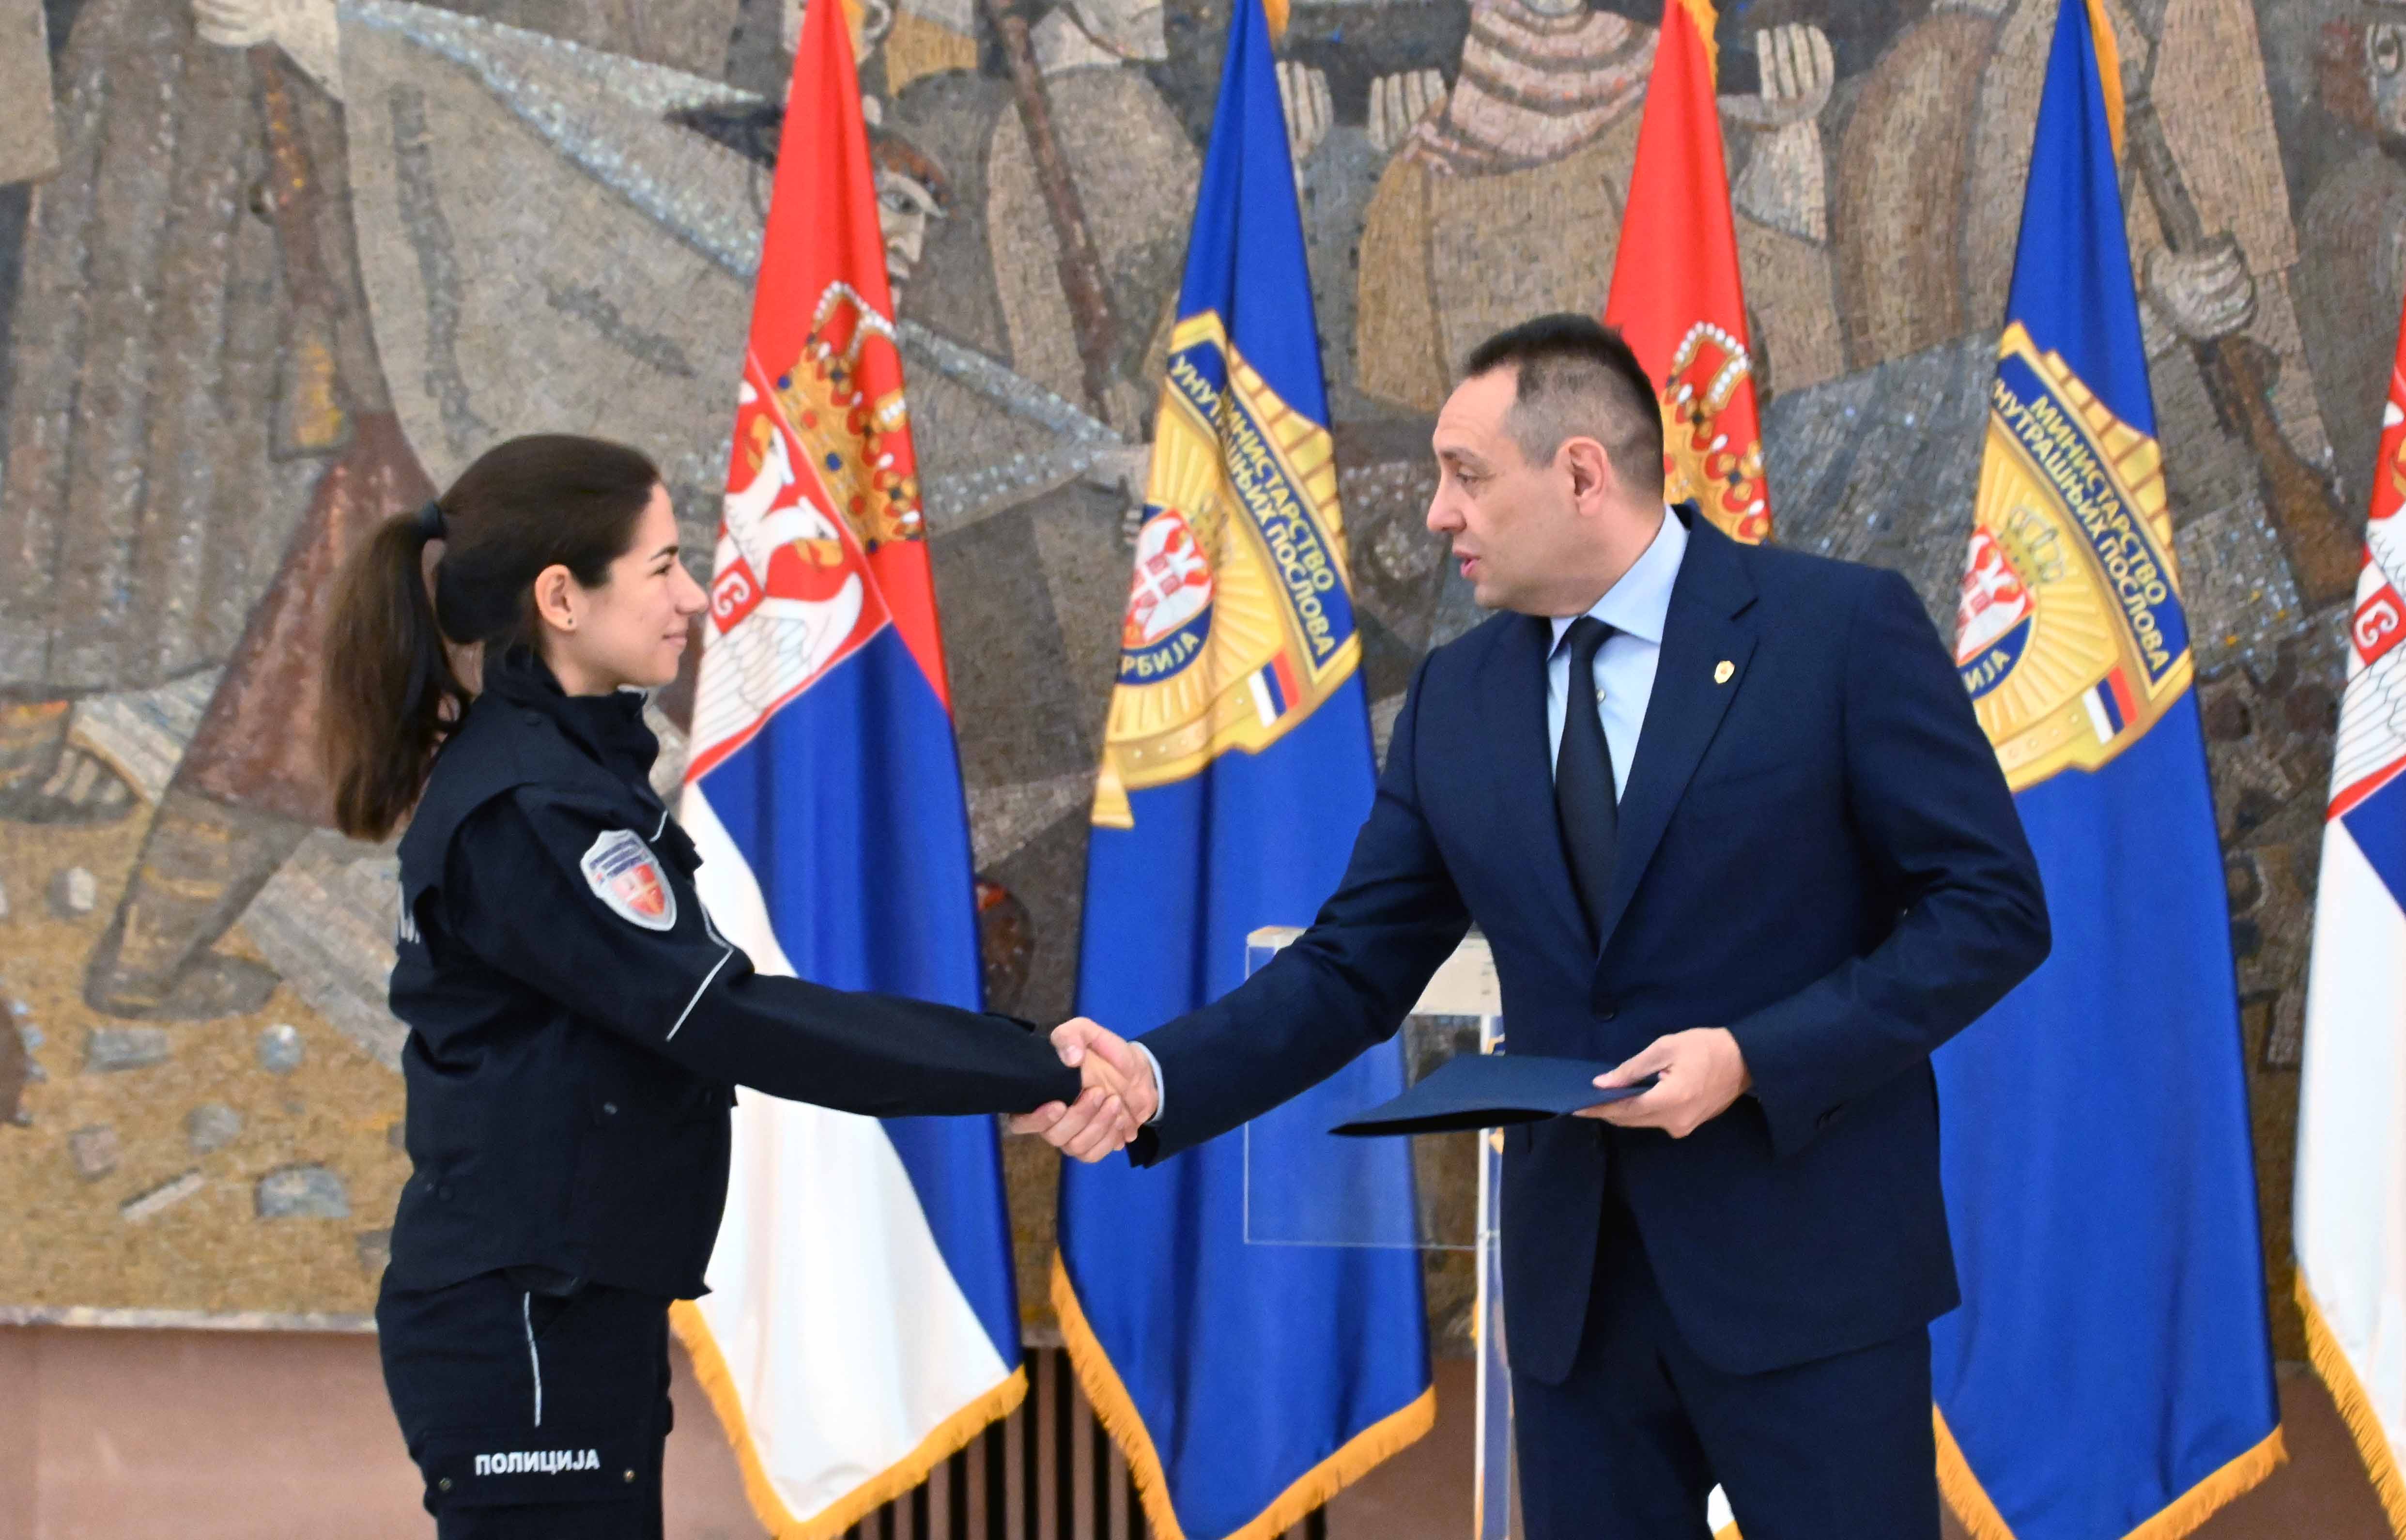 Ministar Vulin studentima KPU i polaznicima COPO: Služiti Srbiji, služiti narodu, služiti idealu pravde je nagrada sama po sebi